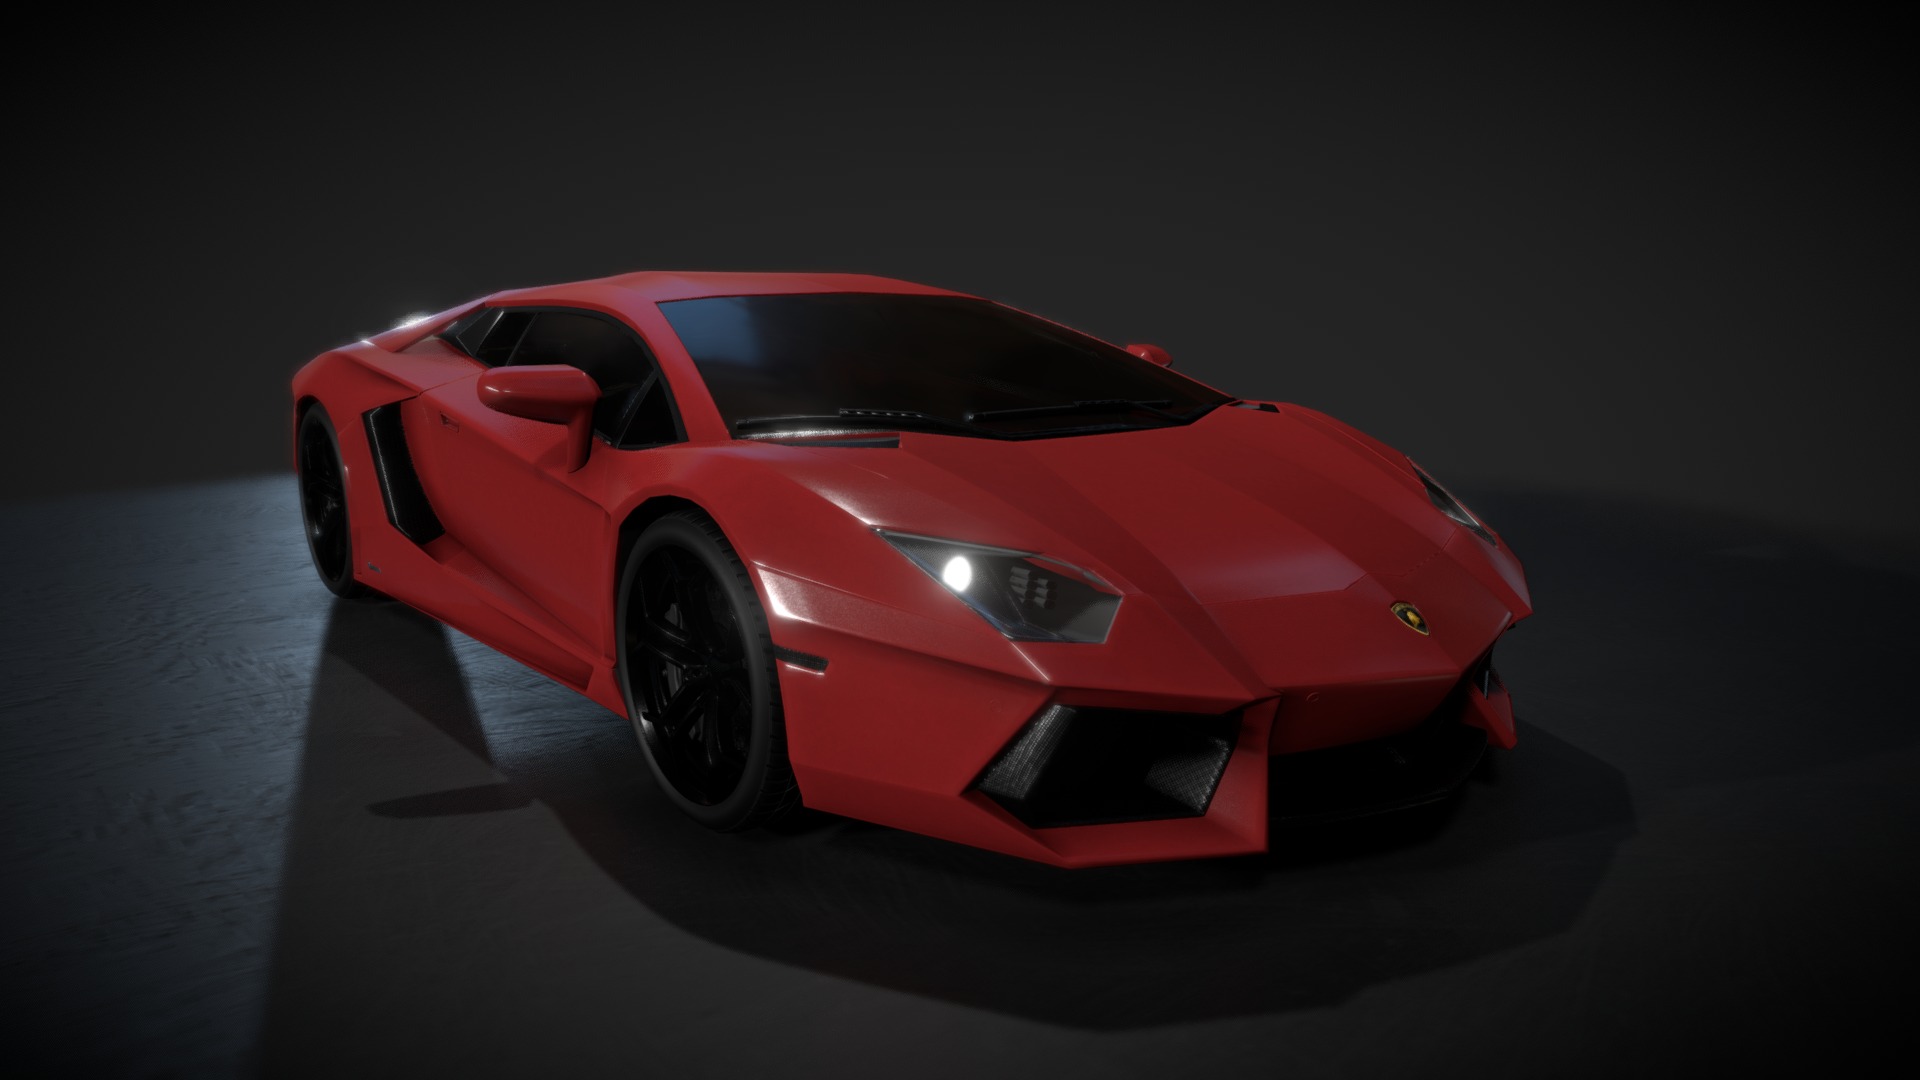 3D model Lamborgini Aventador - This is a 3D model of the Lamborgini Aventador. The 3D model is about a red sports car.